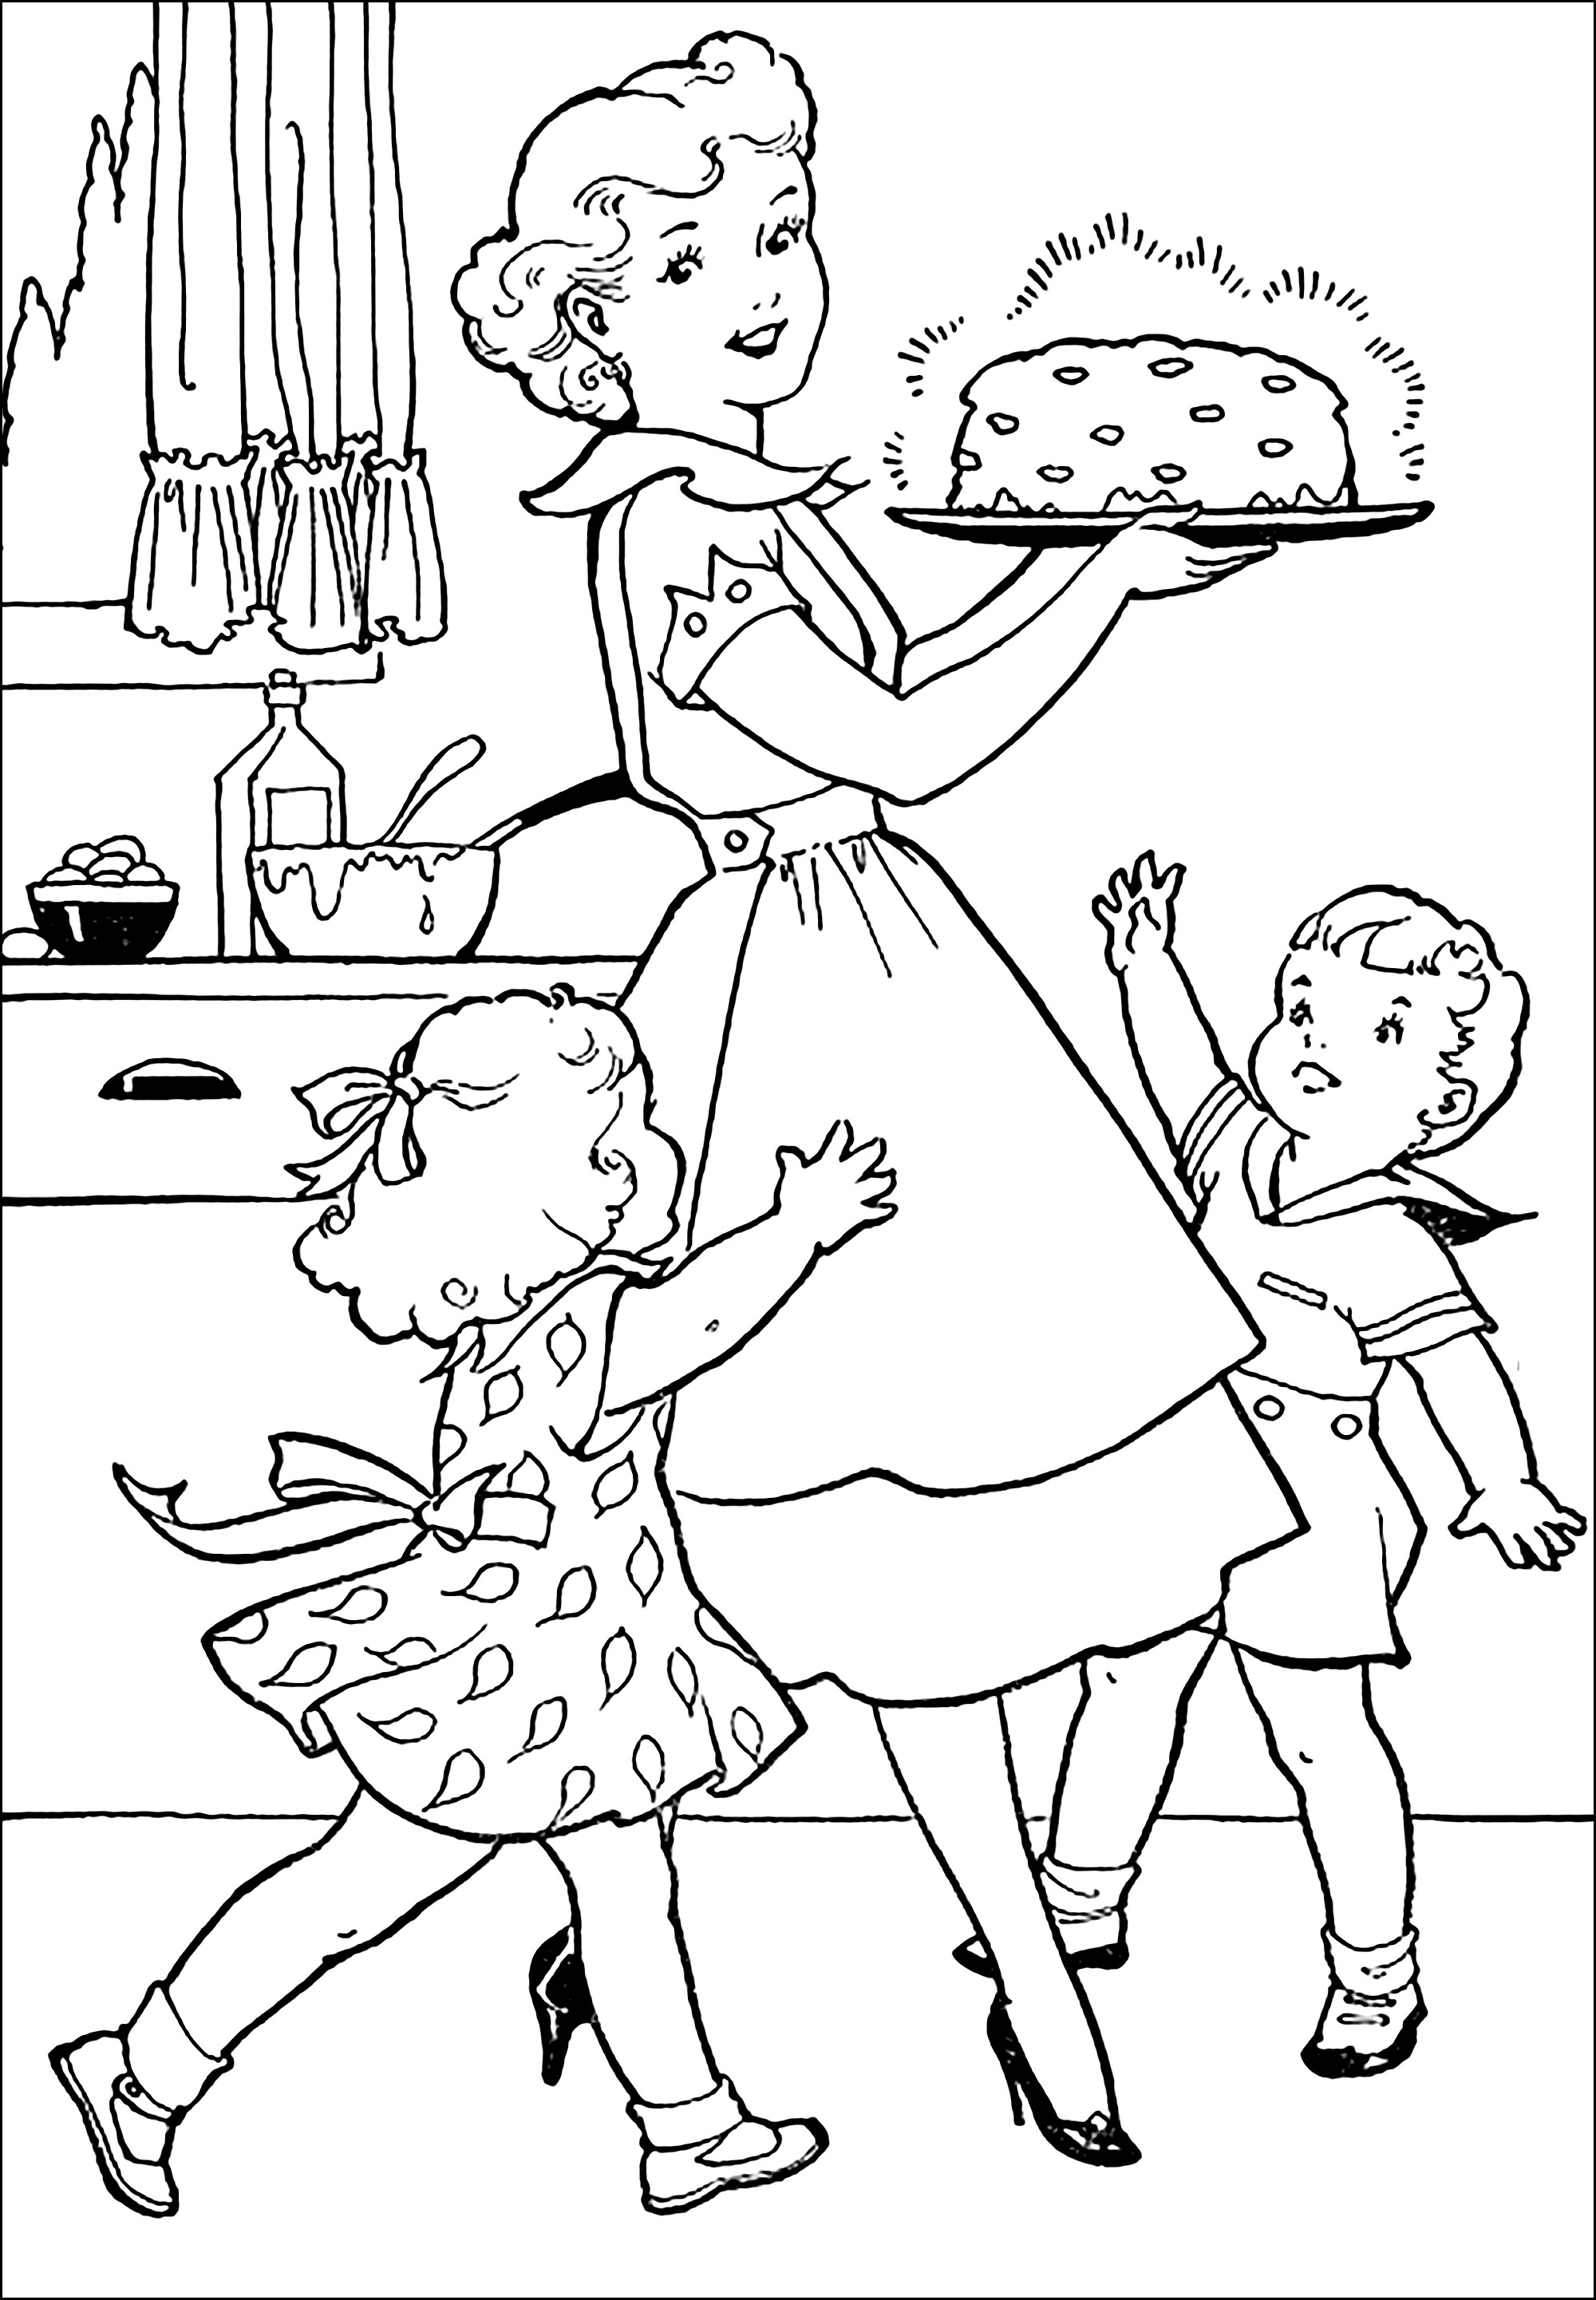 Colorido de los años 50 de una madre preparando una tarta para sus hijos